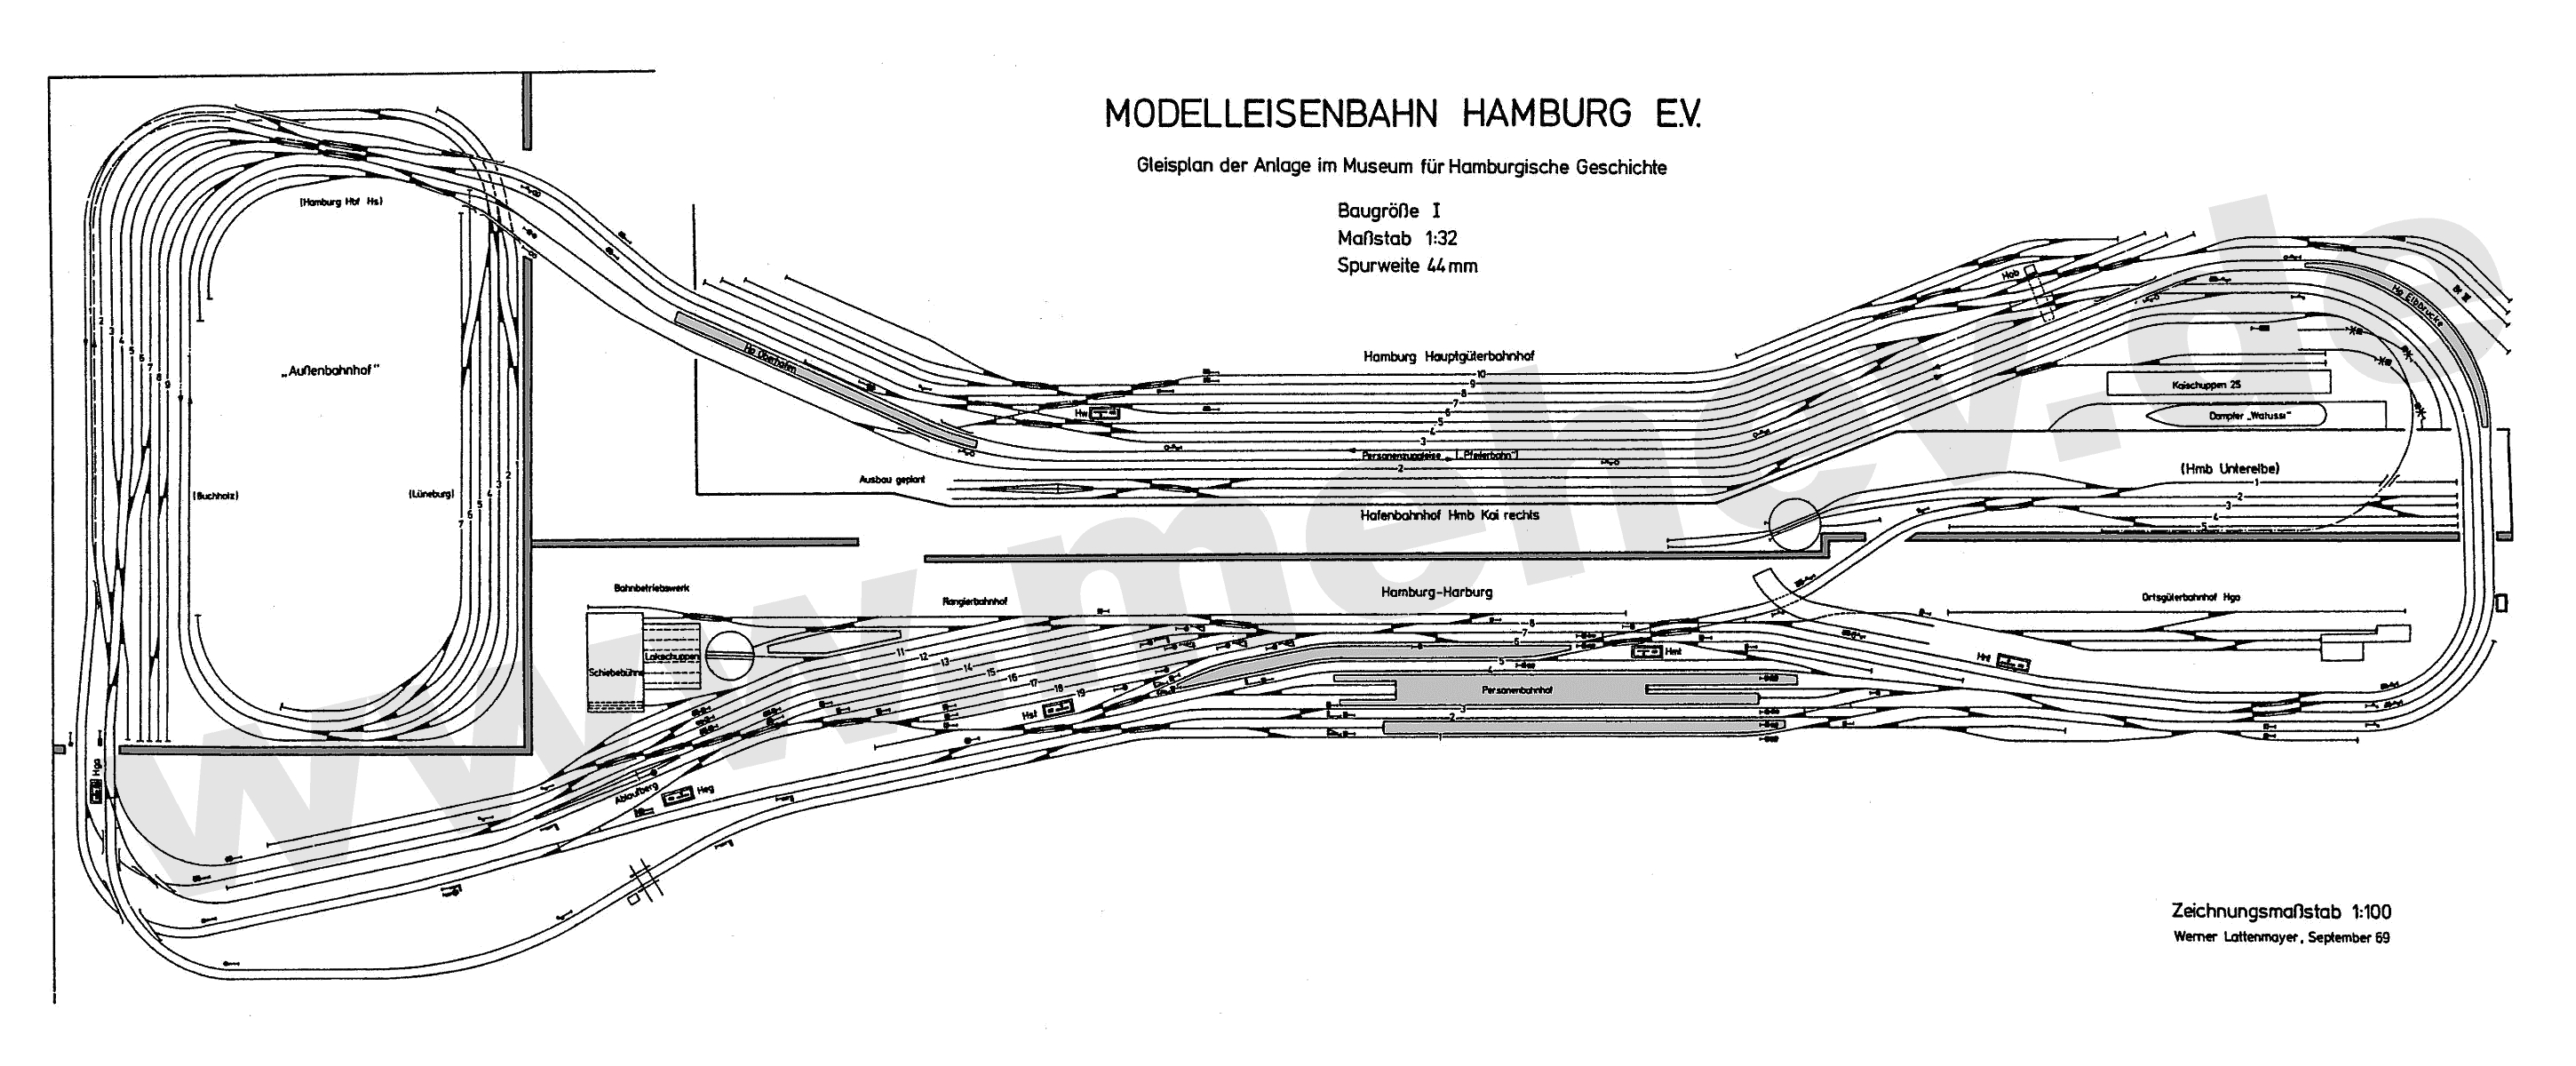 Beschreibung Modelleisenbahn Hamburg e.V.